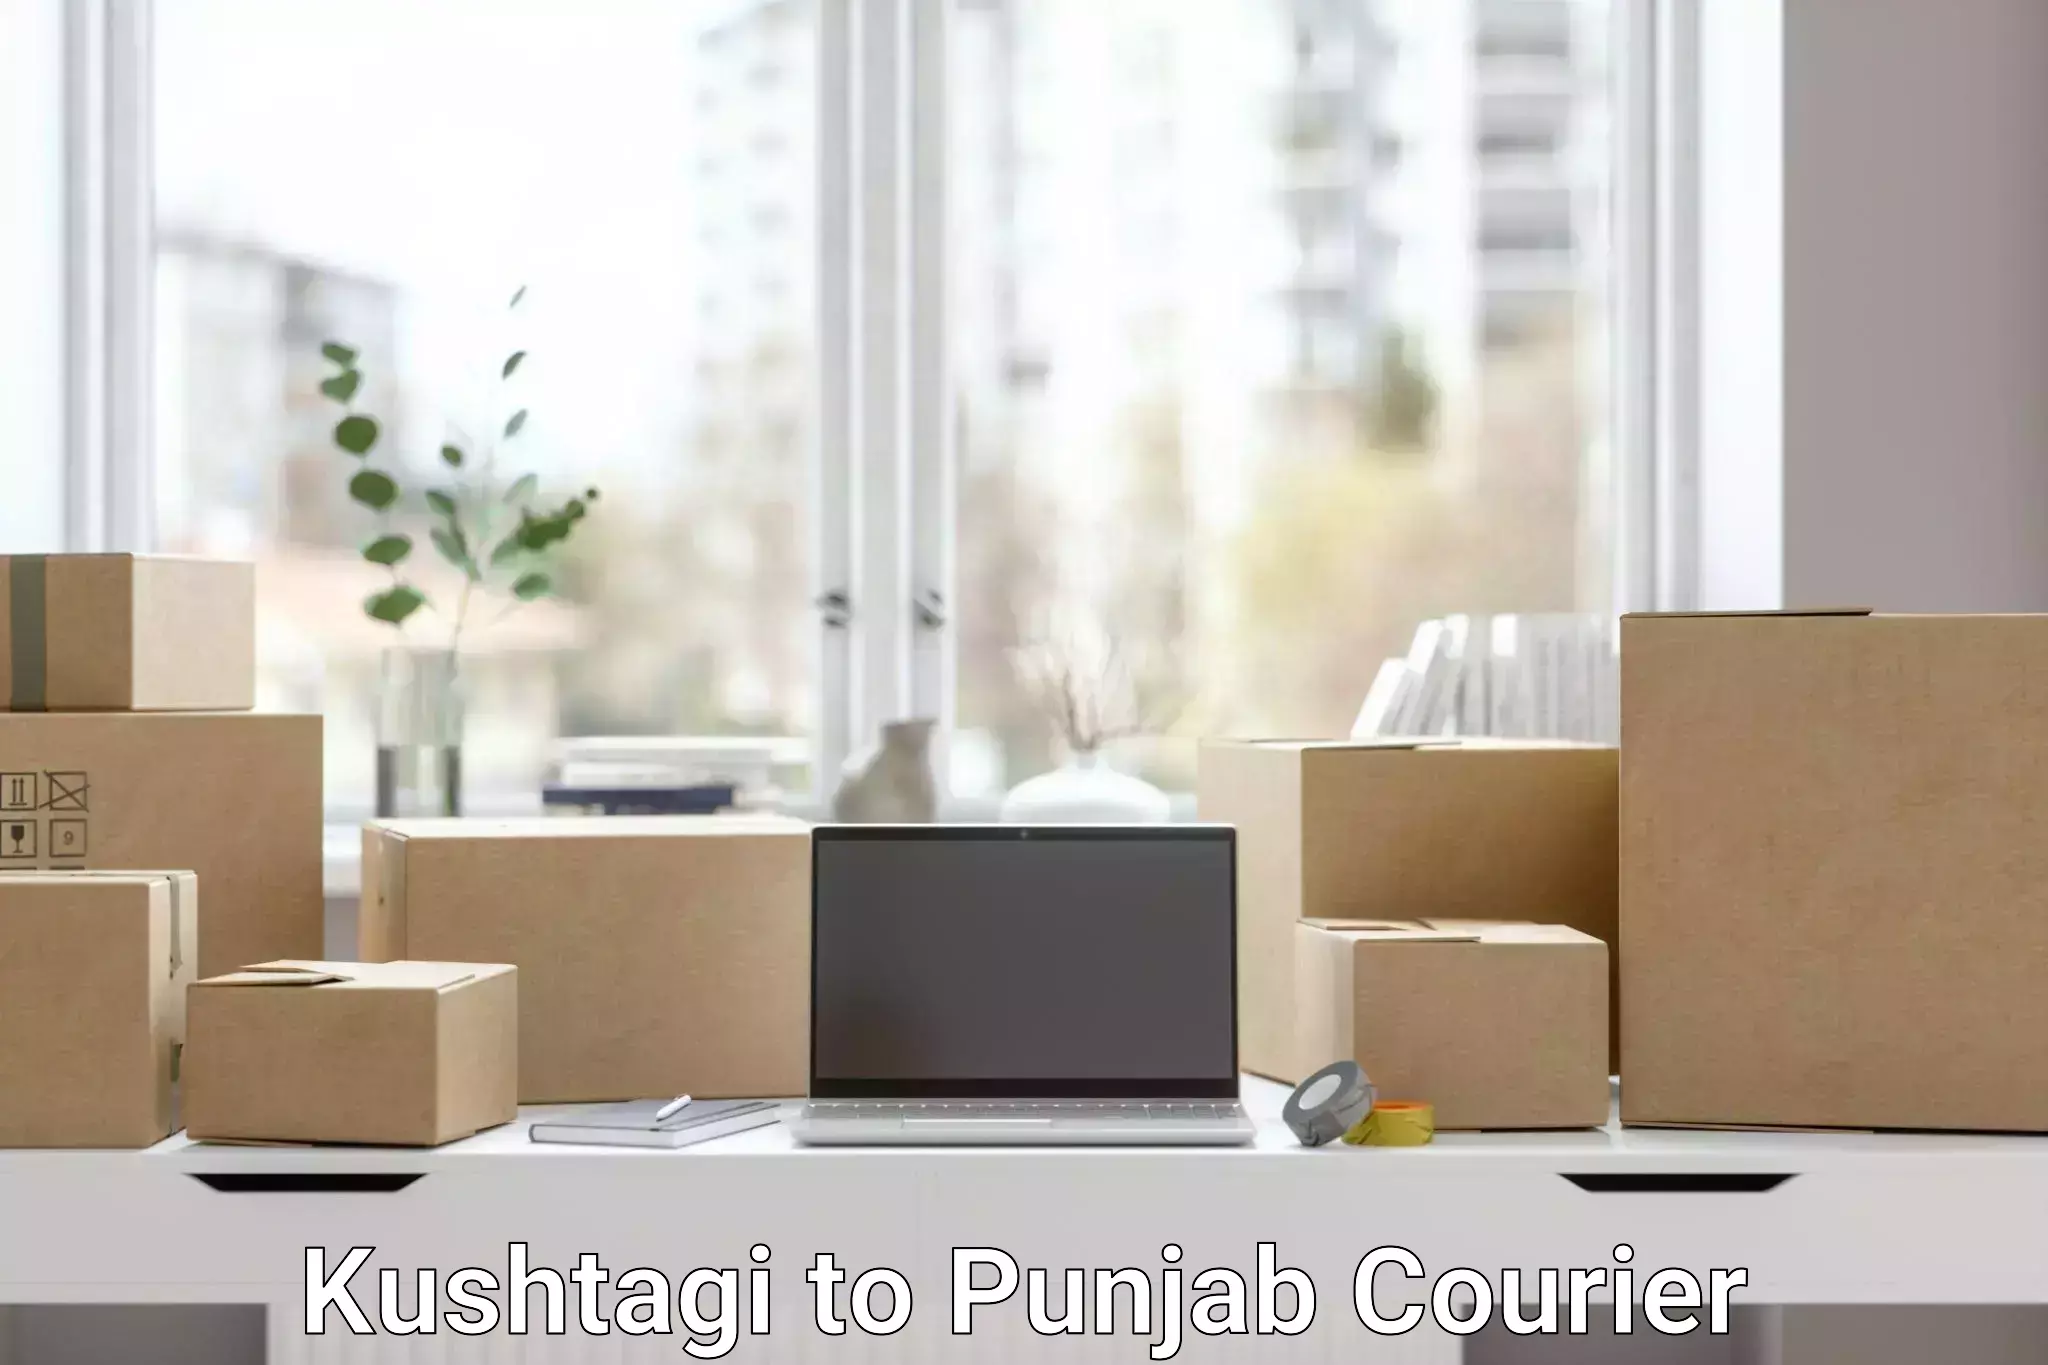 Nationwide parcel services in Kushtagi to Central University of Punjab Bathinda